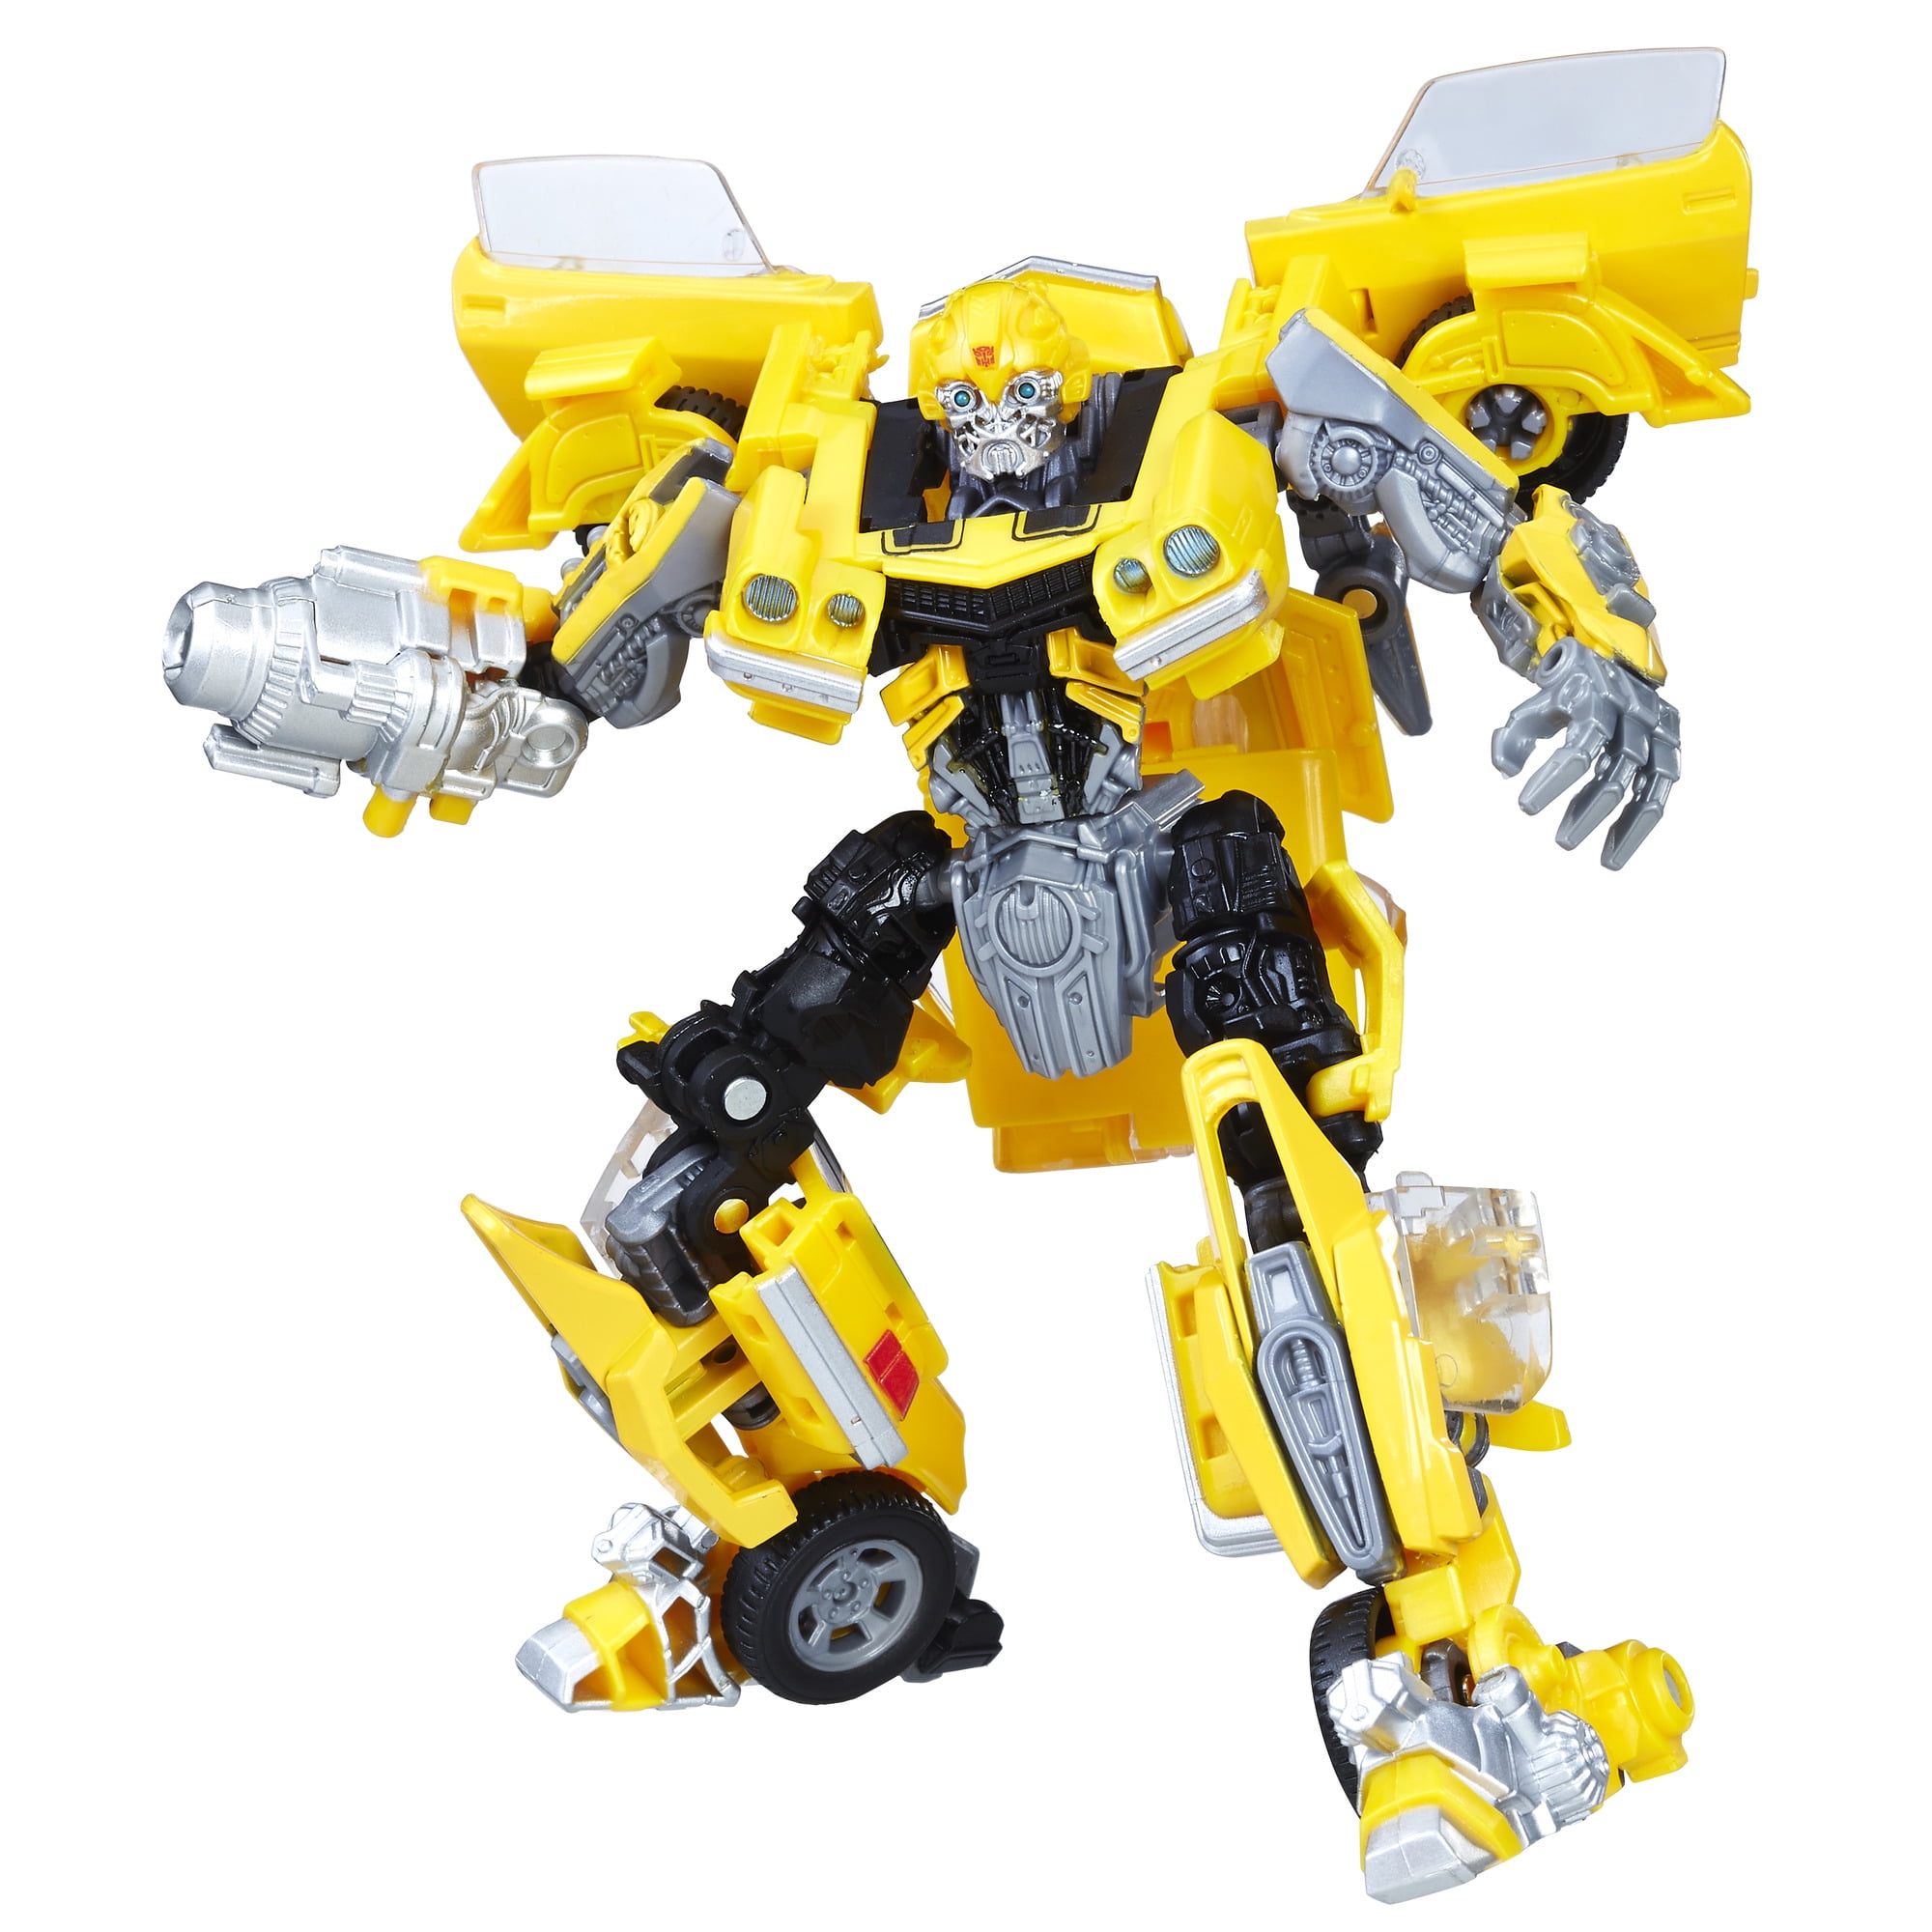 Transformers Studio Series Premier Deluxe Bumblebee Hasbro